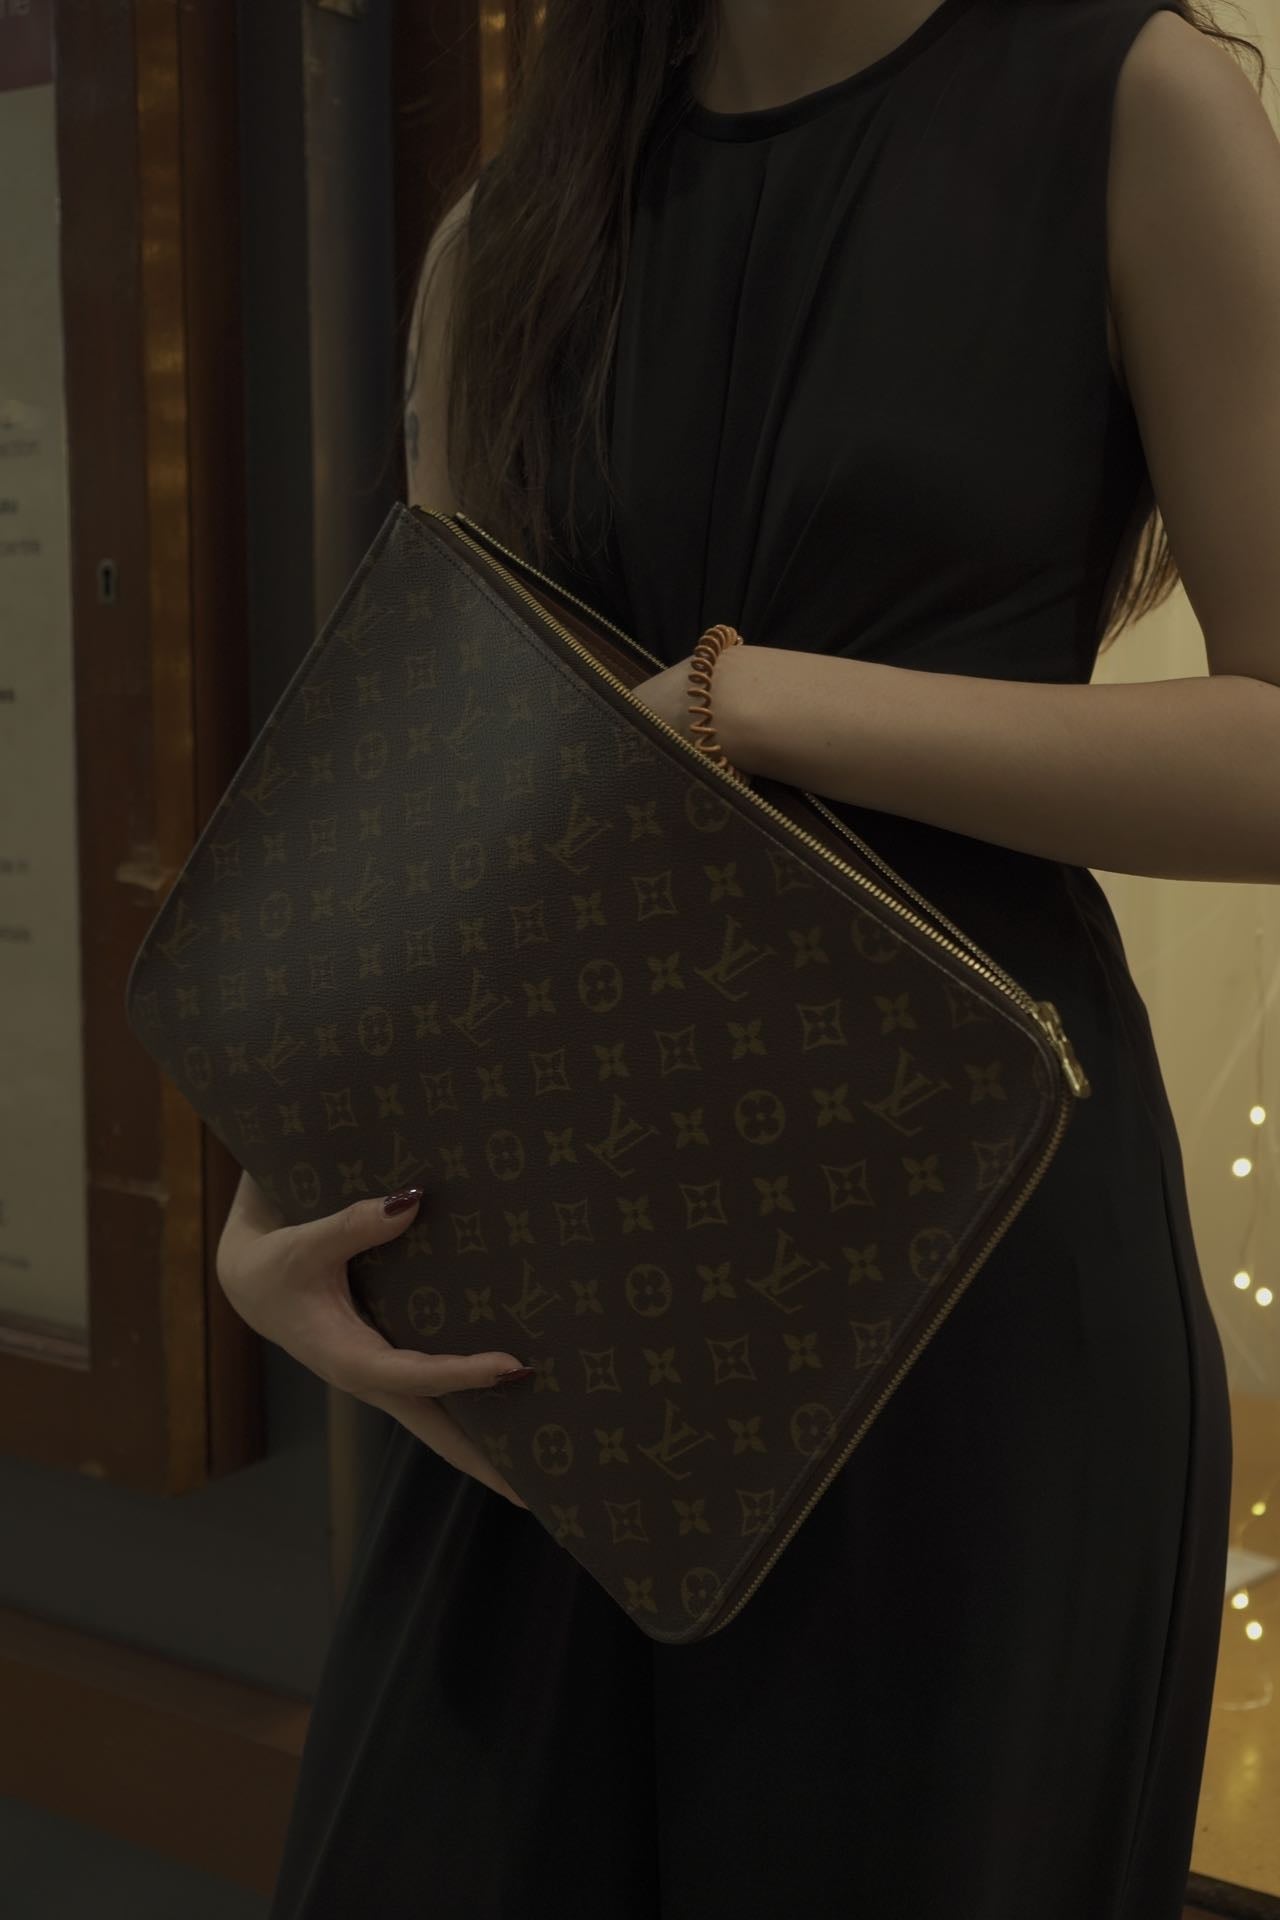 Louis Vuitton Laptop Bag Bags for Men for sale  eBay